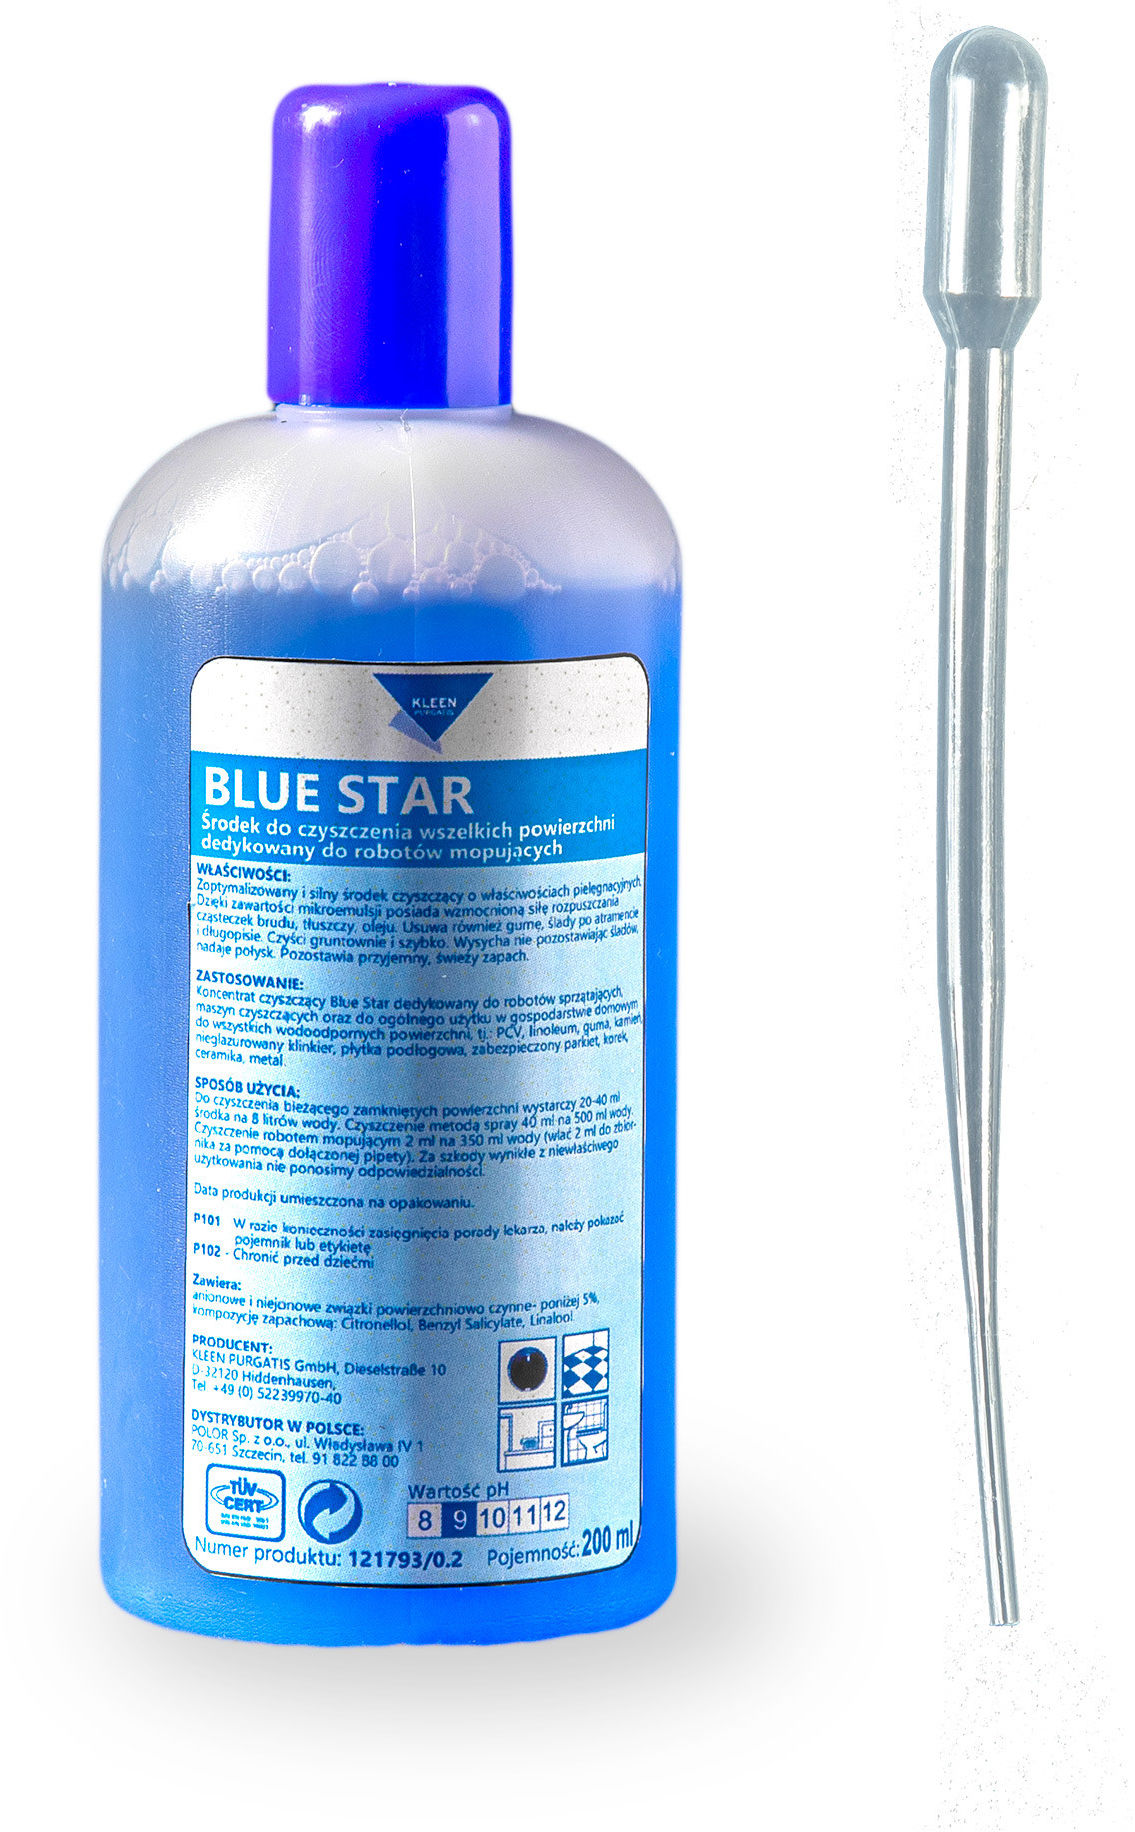 Blue Star 200 ml - środek czyszczący do robotów, maszyn i użytku ogólnego